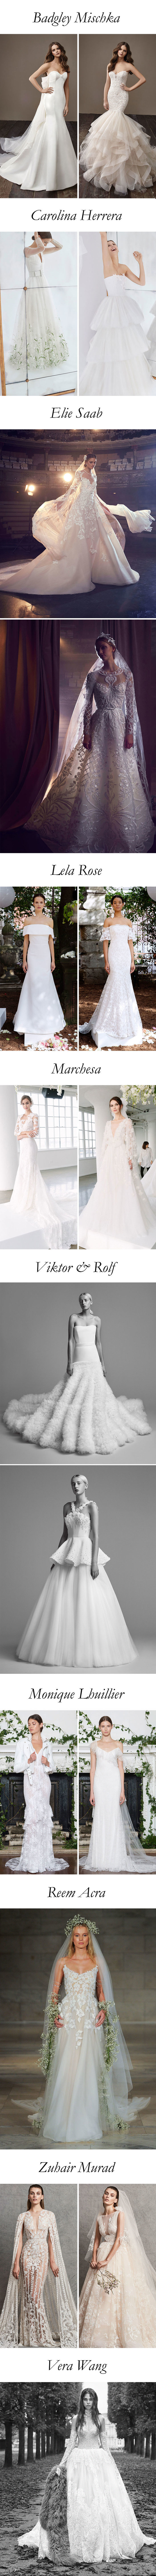 Os melhores vestidos da Bridal Fashion Week - Por Layla Monteiro